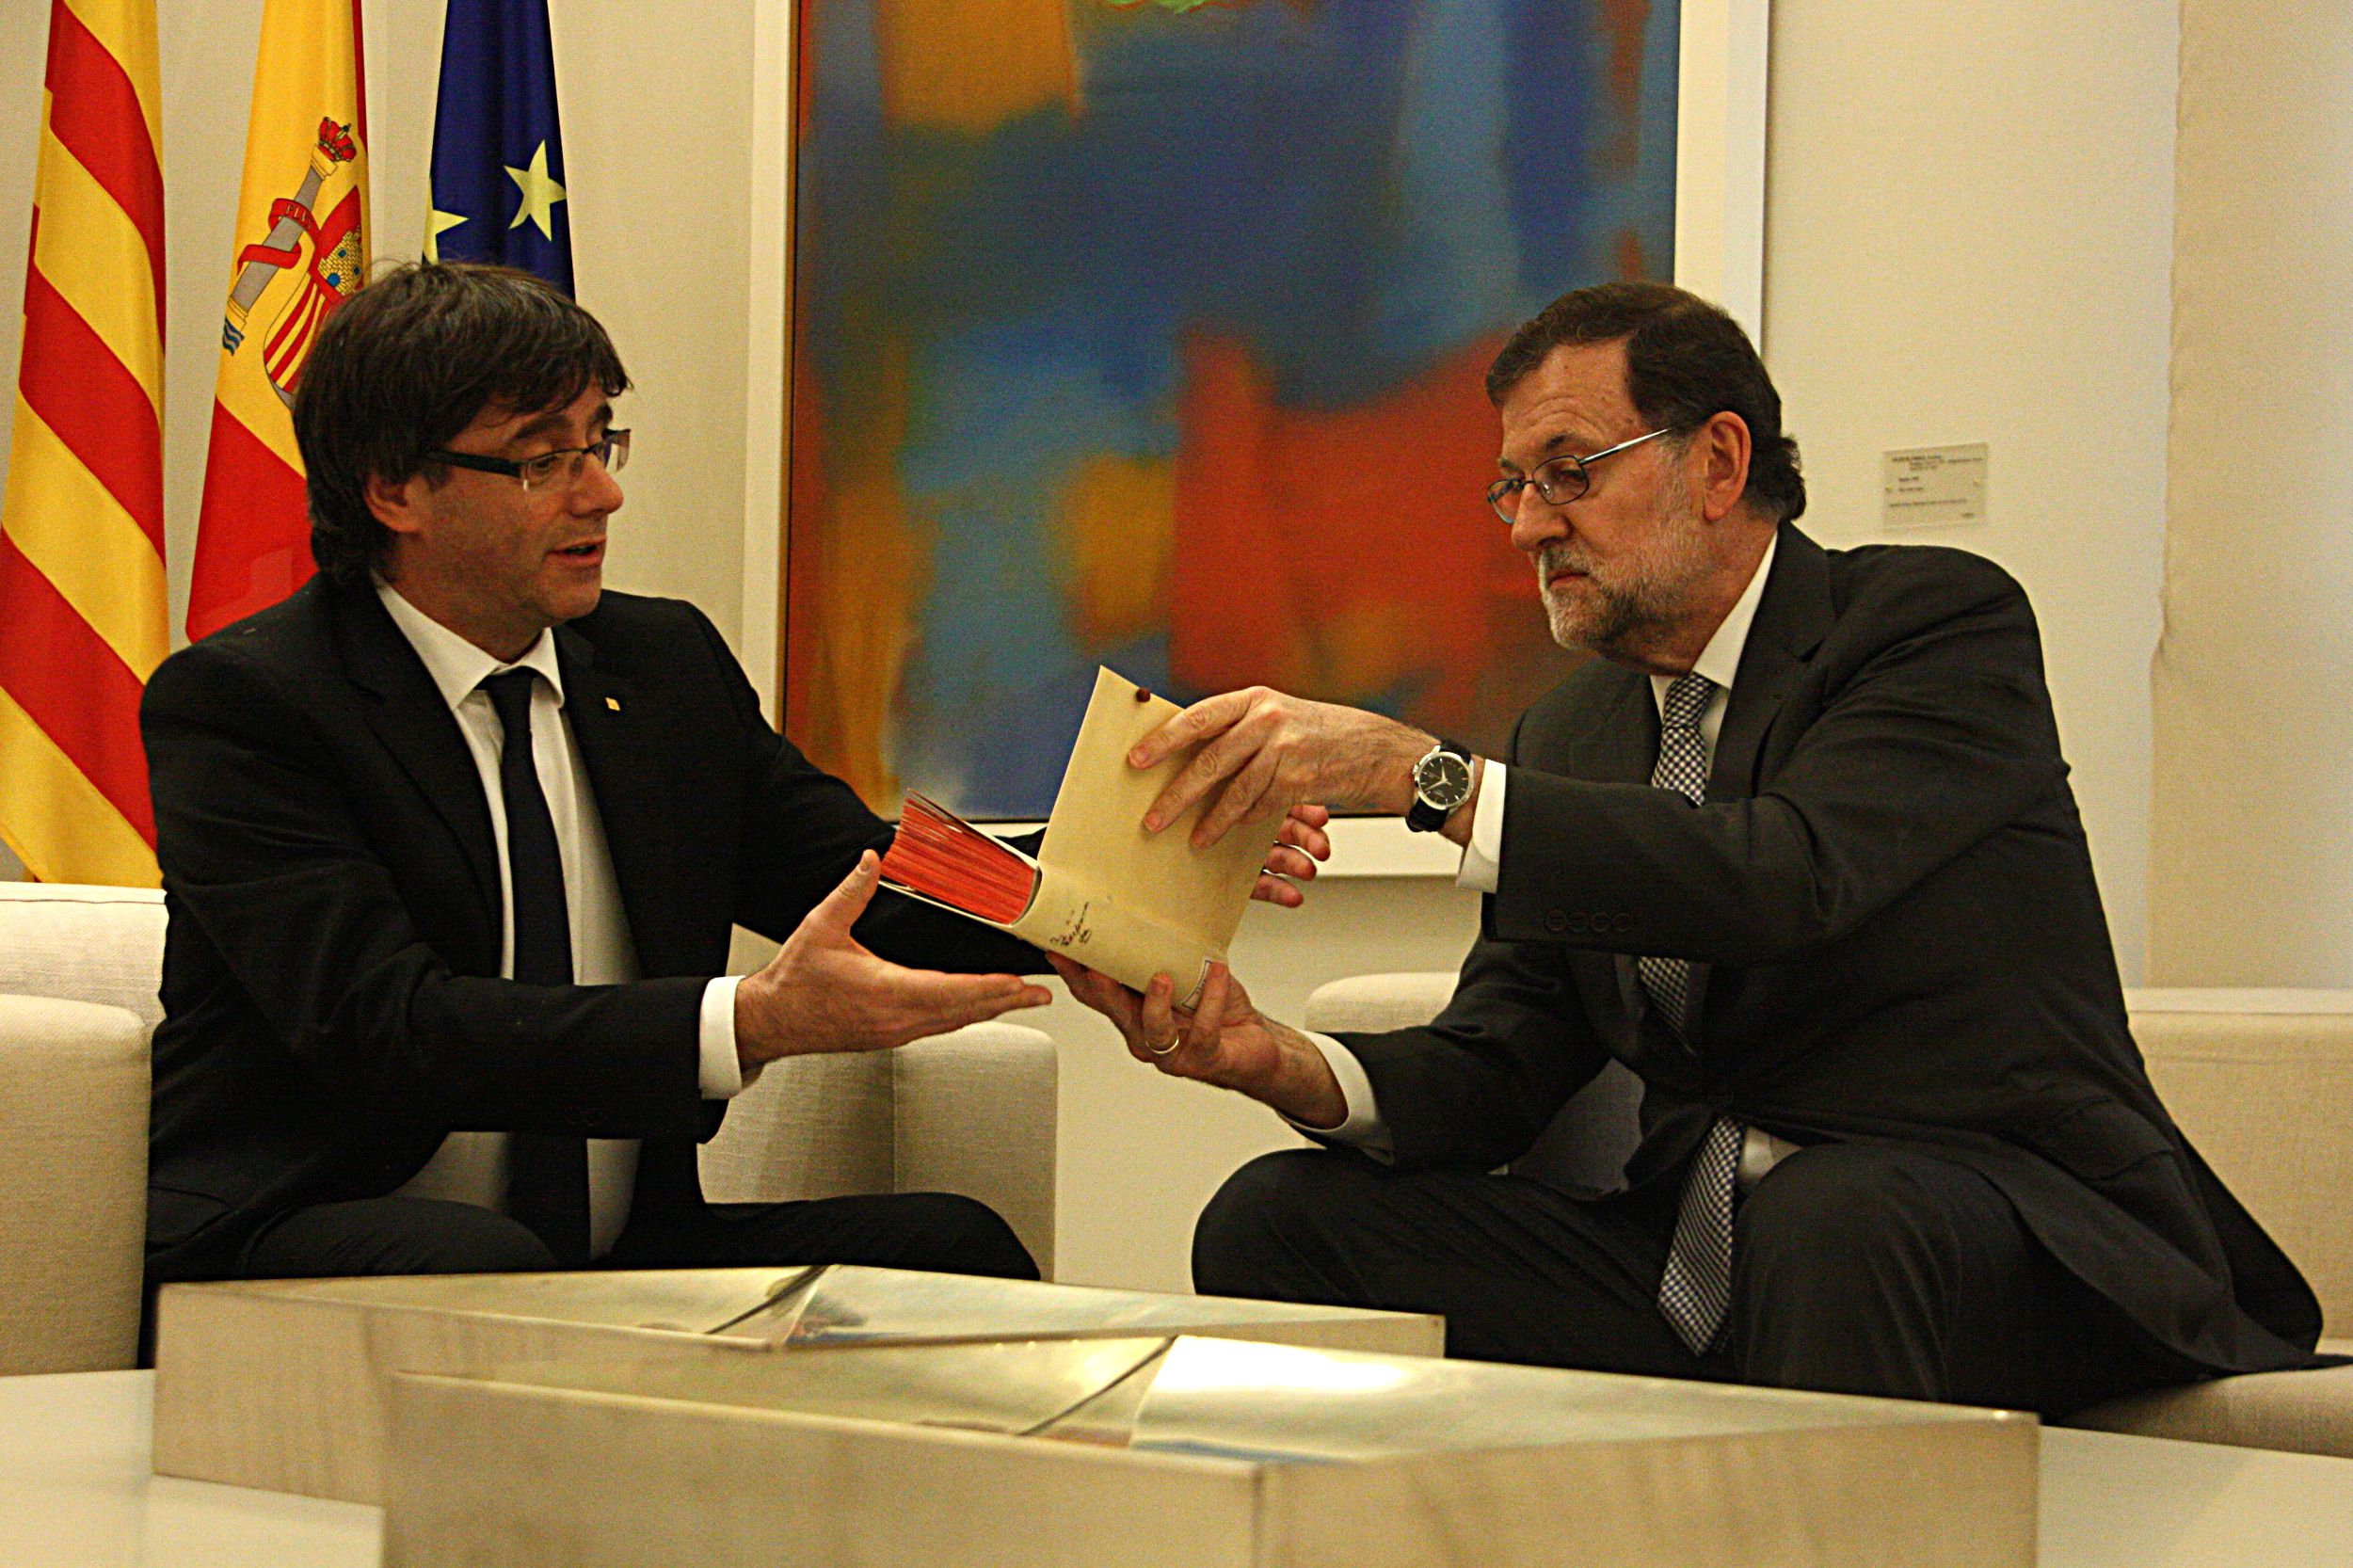 El Govern creu que "l'Estat ja no considera que Catalunya formi part d'Espanya"